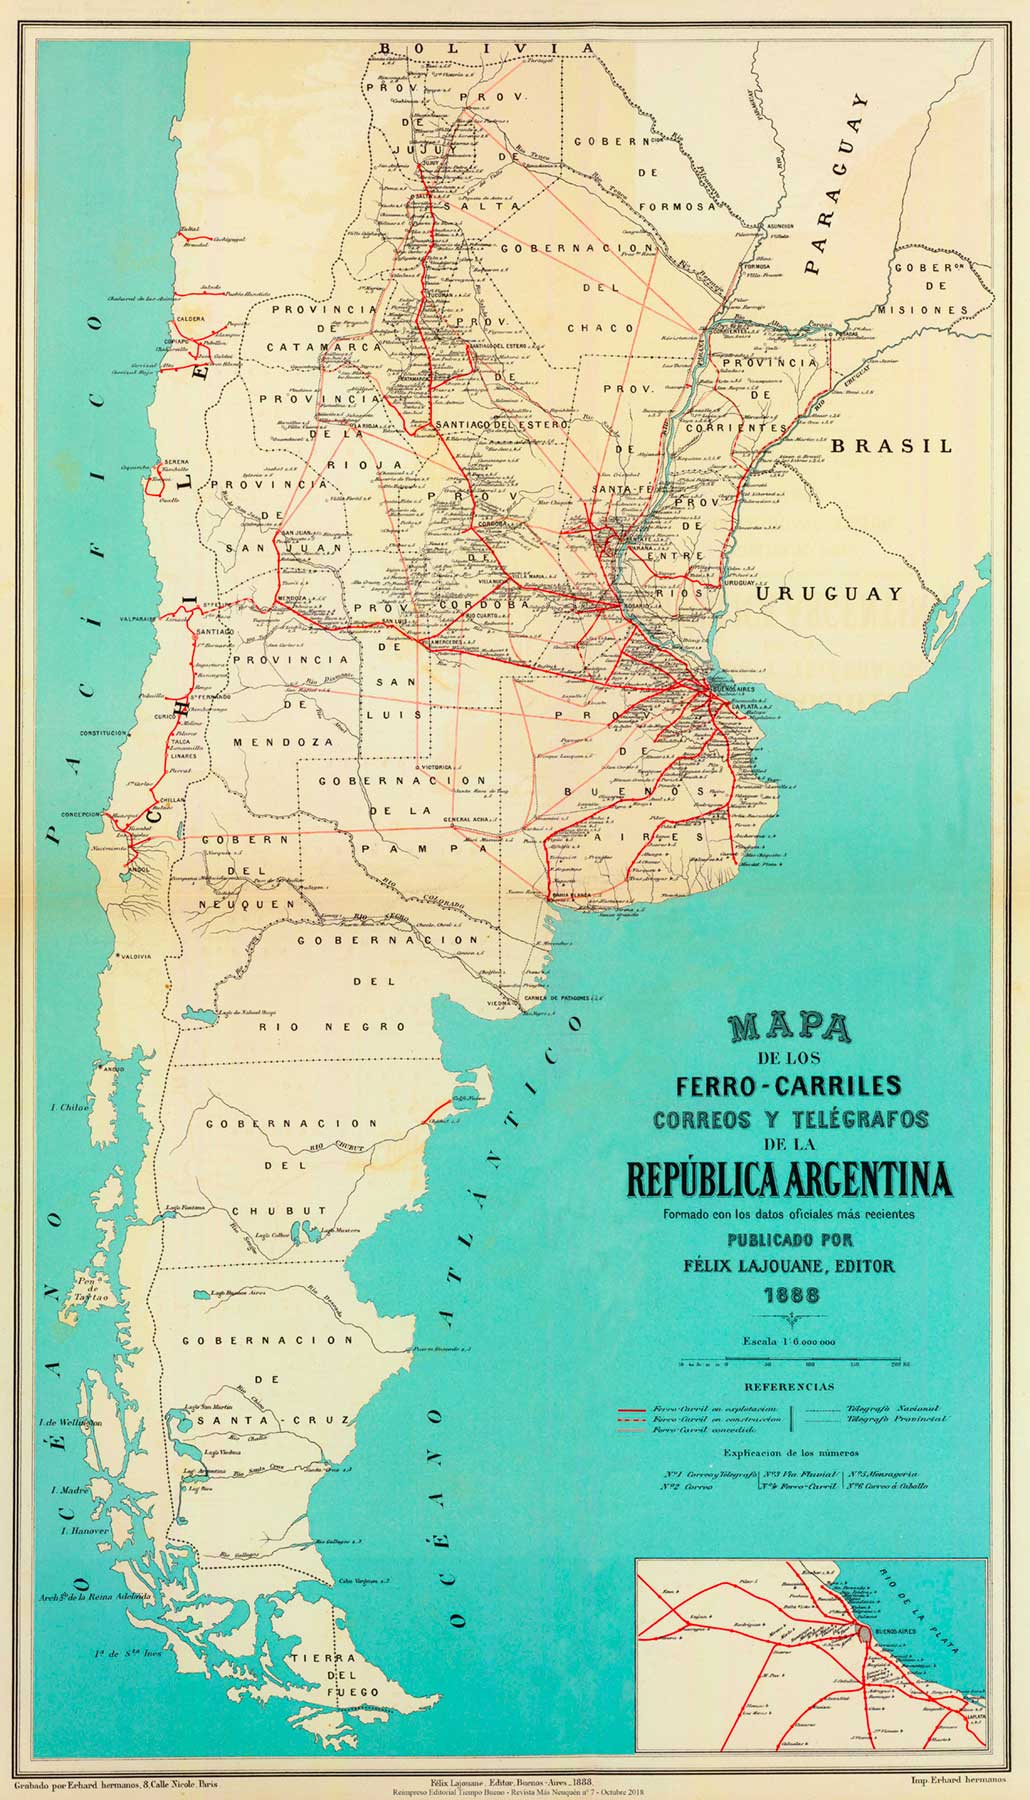 Mapa de la República Argentina - 1888 - Ferrocarriles, correos y telégrafos.